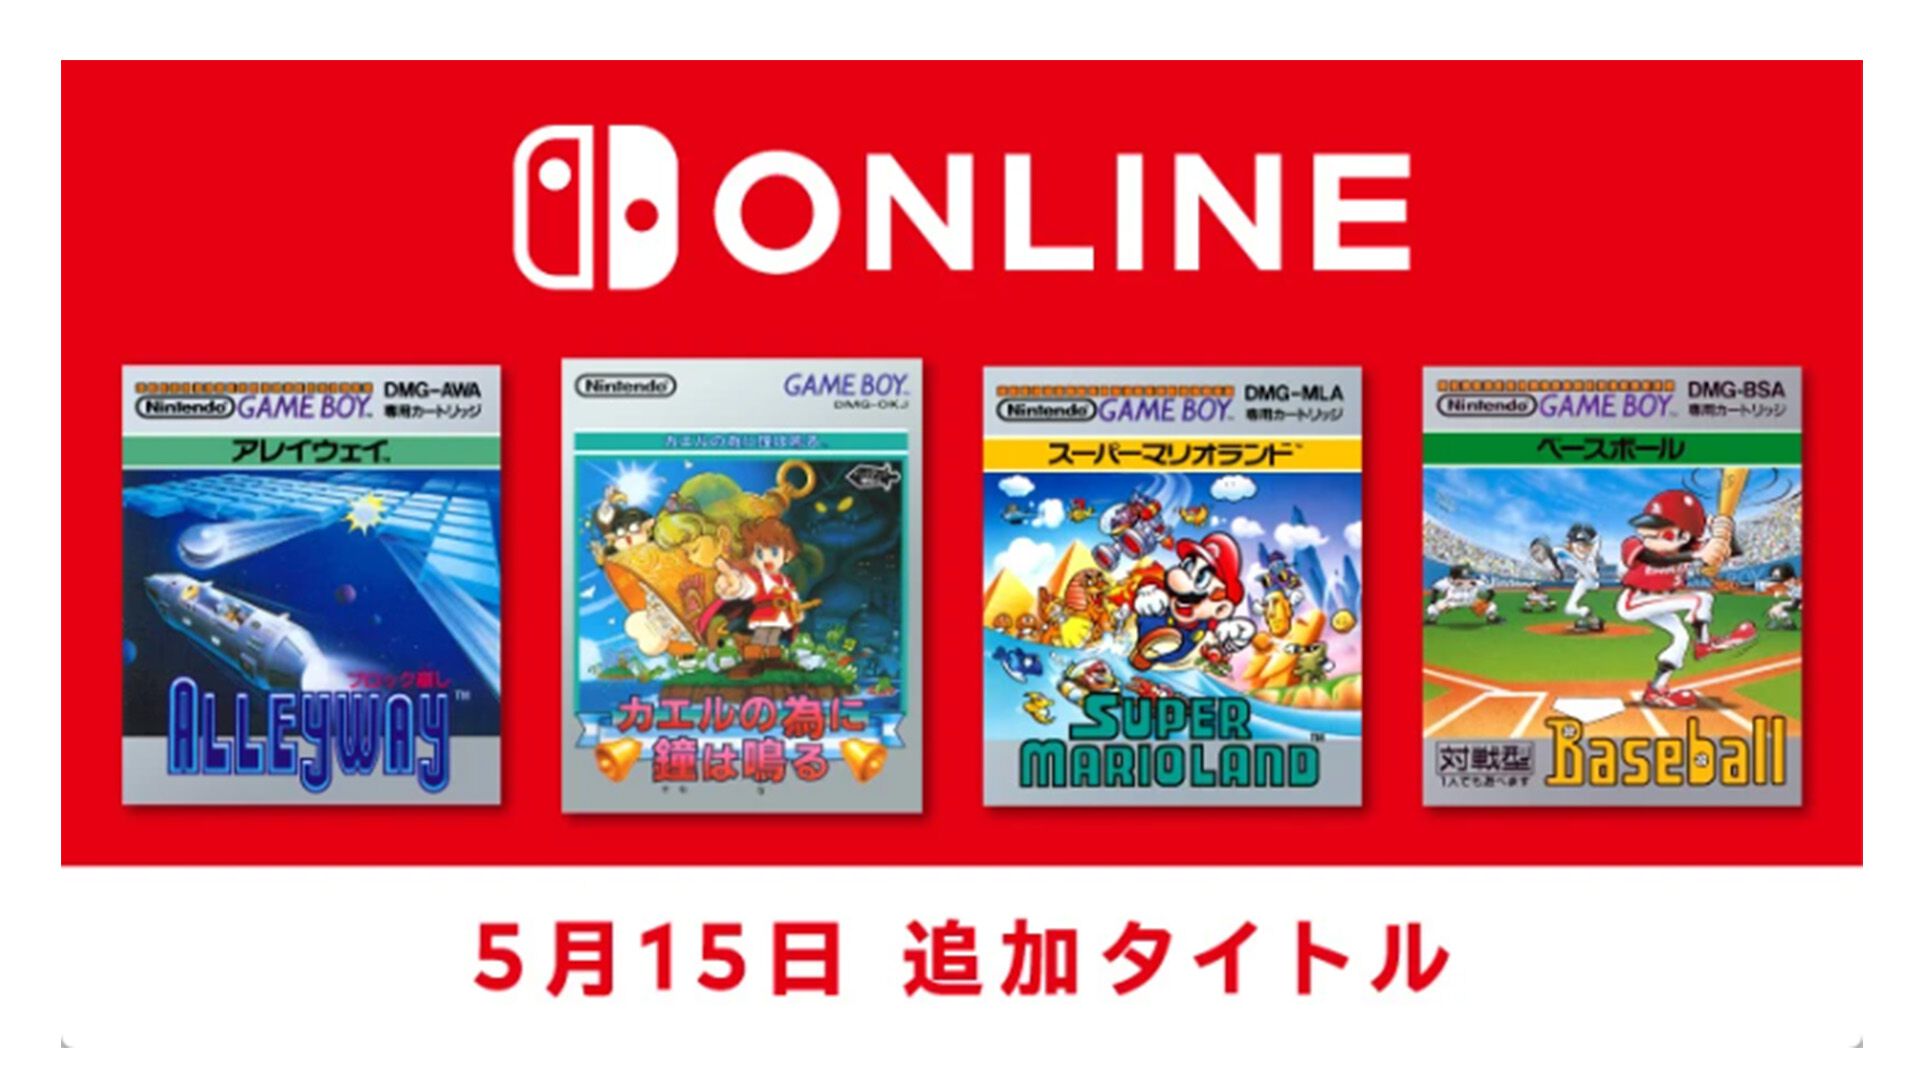 ゲームボーイ Nintendo Switch Onlineに『カエルの為に鐘は鳴る』や『スーパーマリオランド』など4タイトルが追加